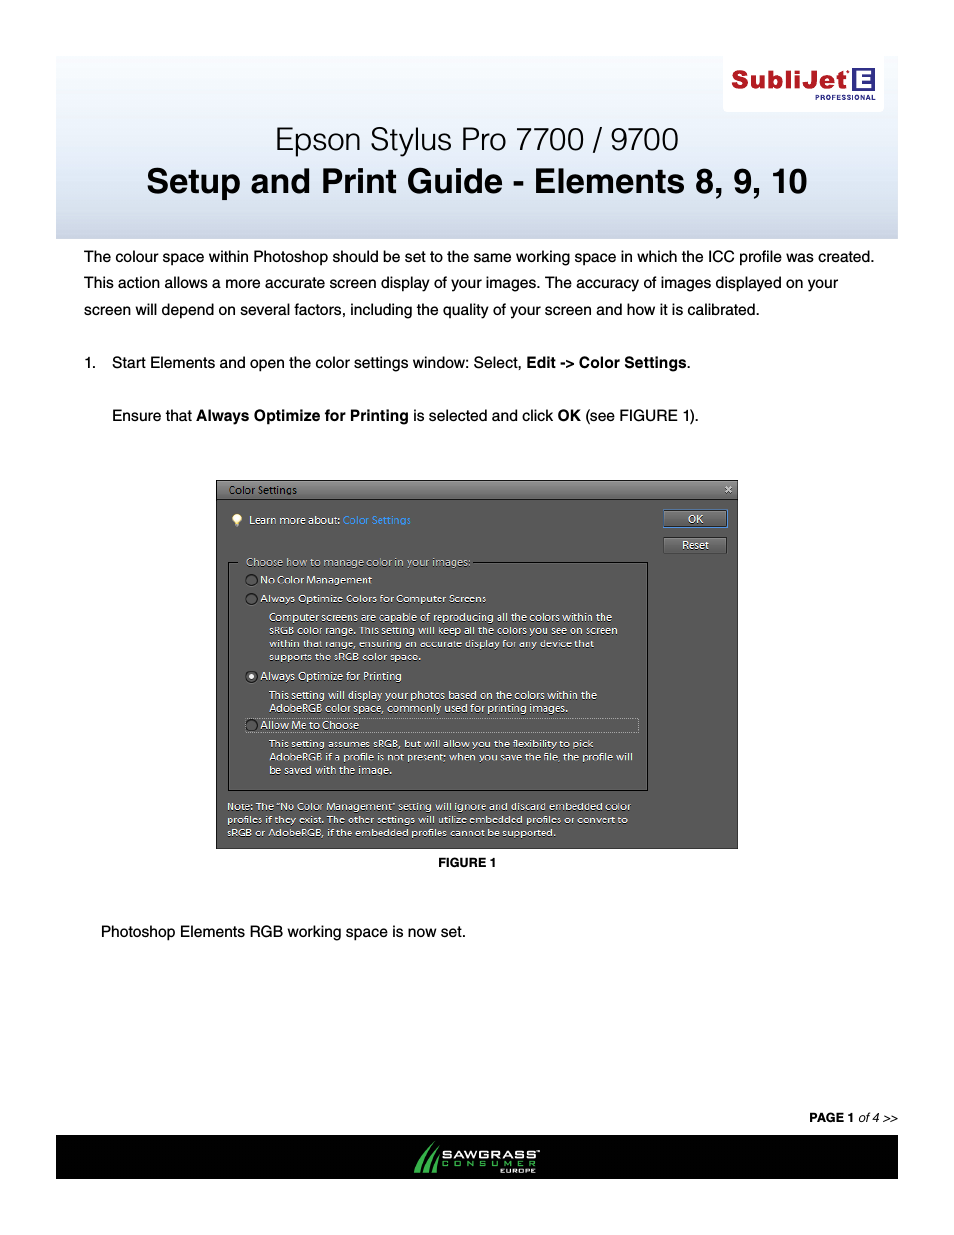 SubliJet E Epson Stylus Pro 7700 (Windows ICC Profile Setup): Print & Setup Guide Photoshop Elements 8 - 10